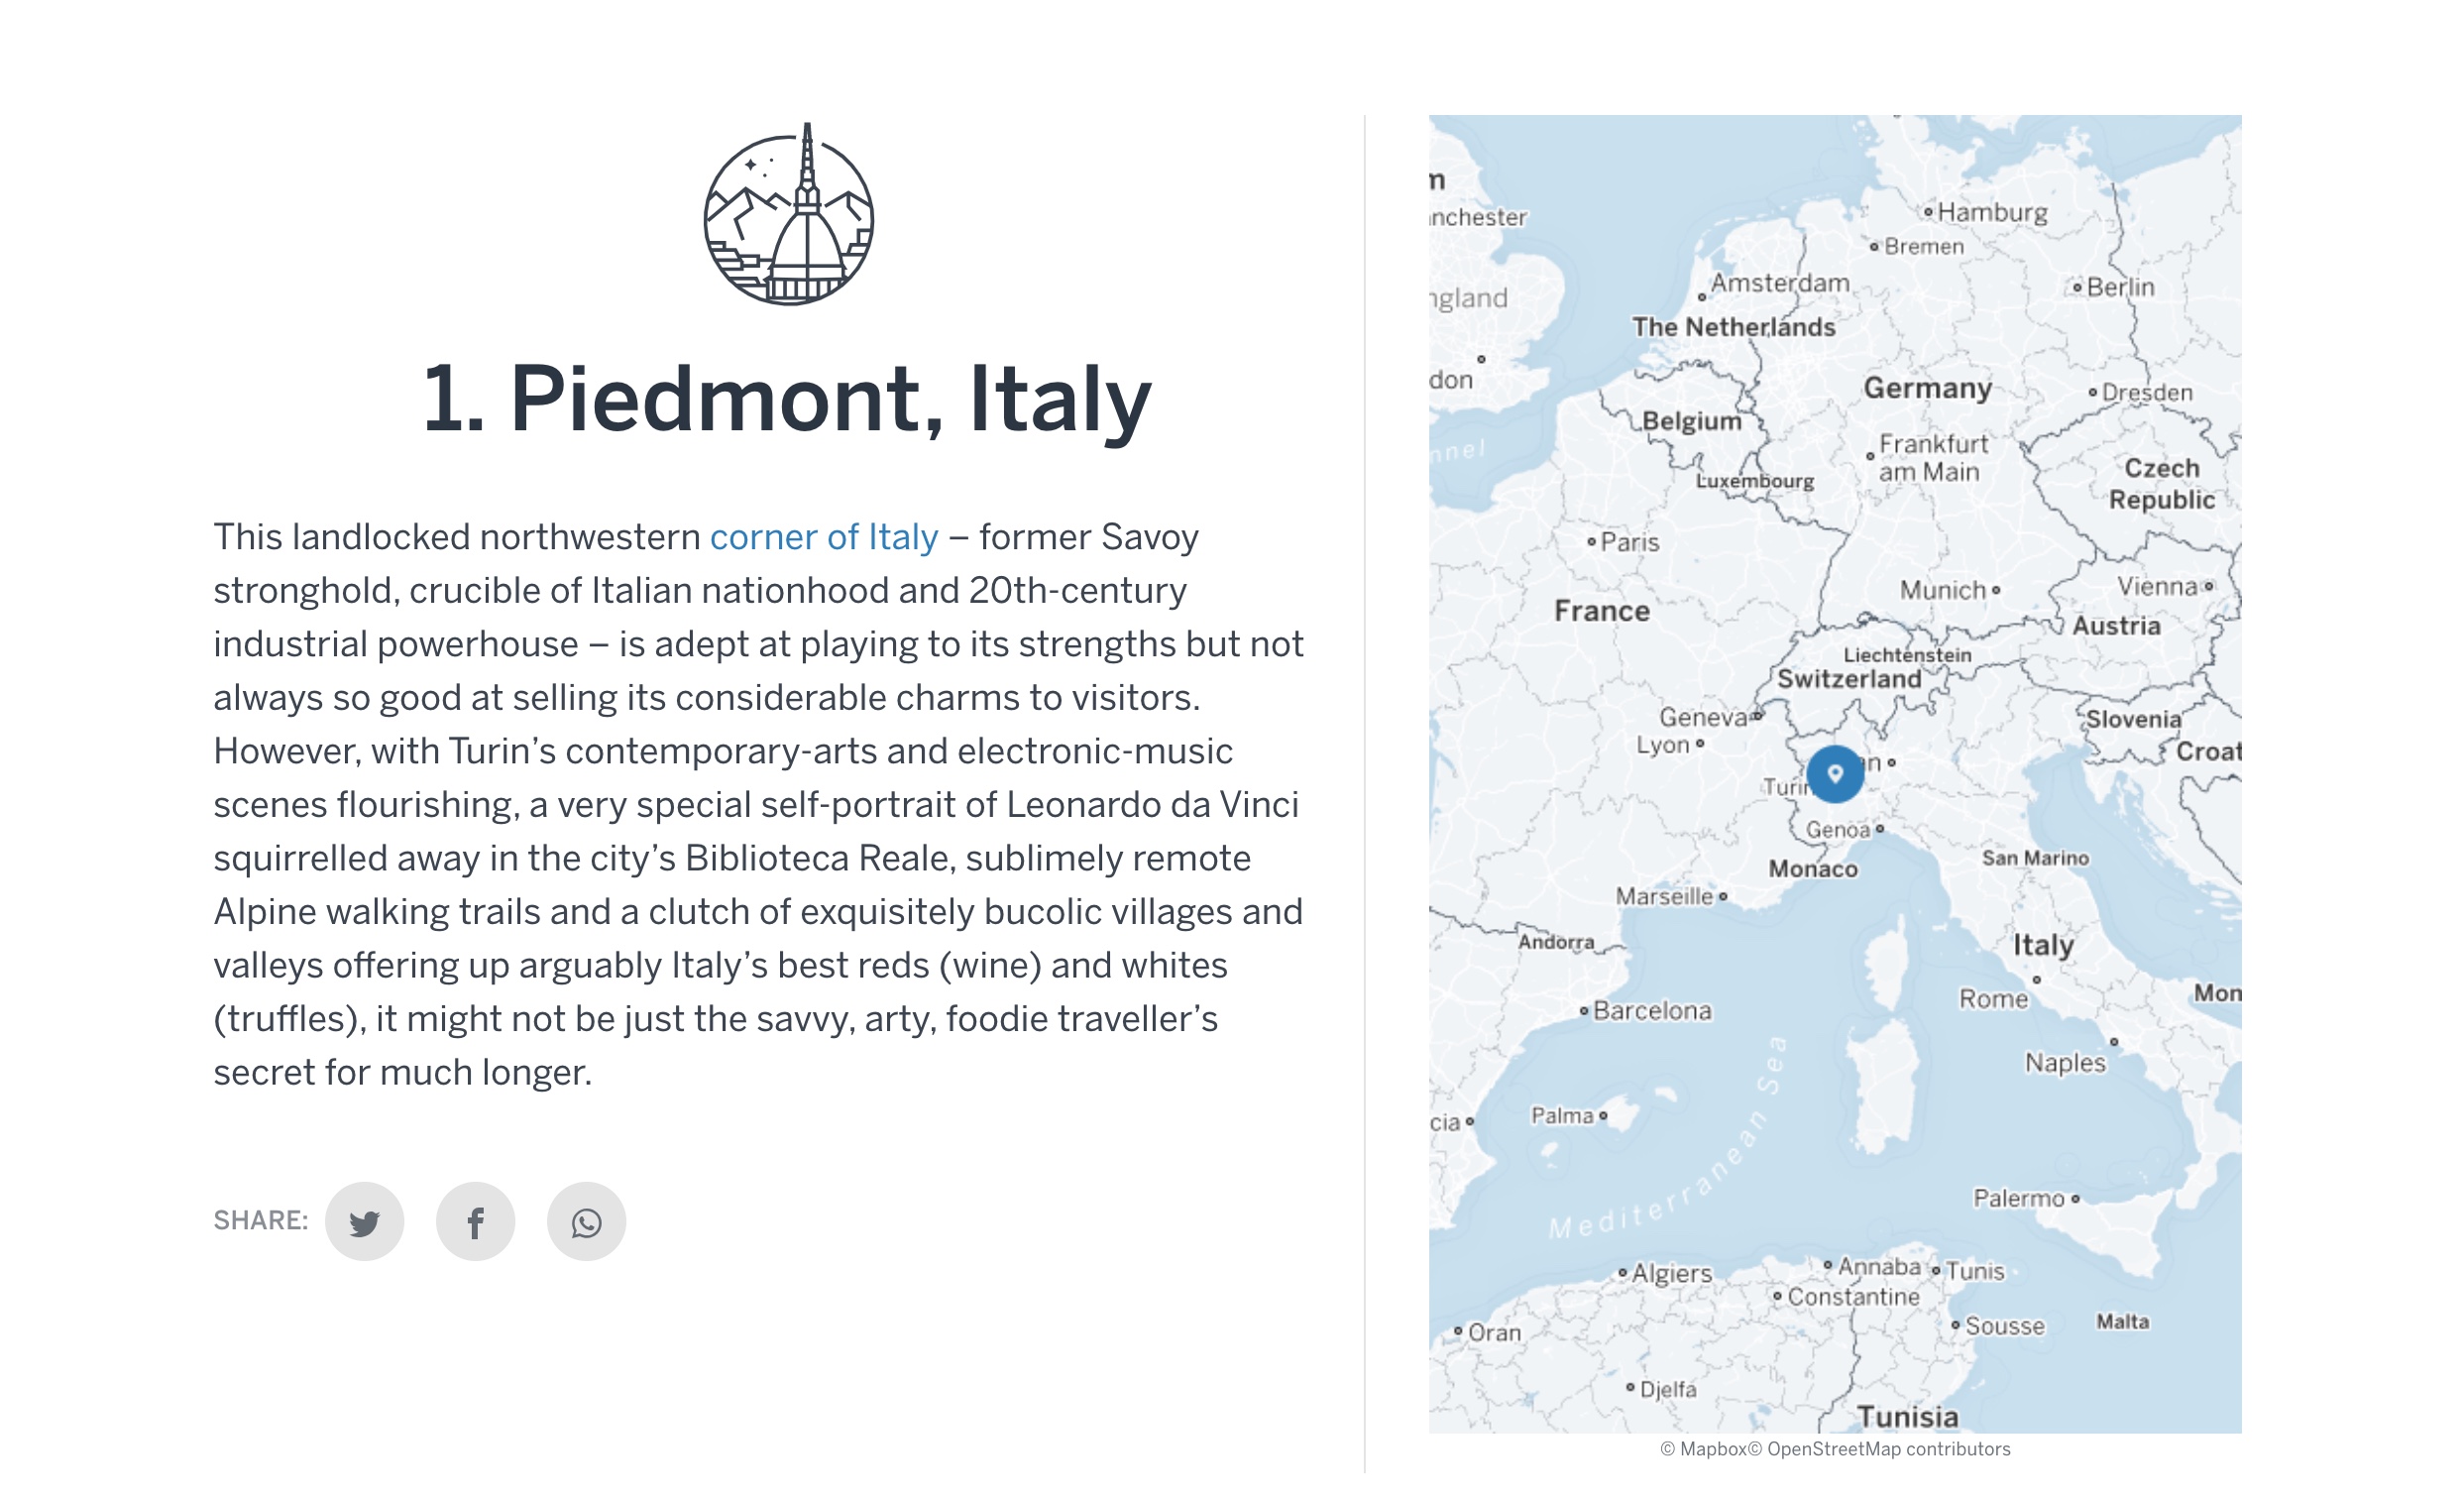 Secondo Lonely Planet, il Piemonte è la prima regione al mondo da visitare nel 2019